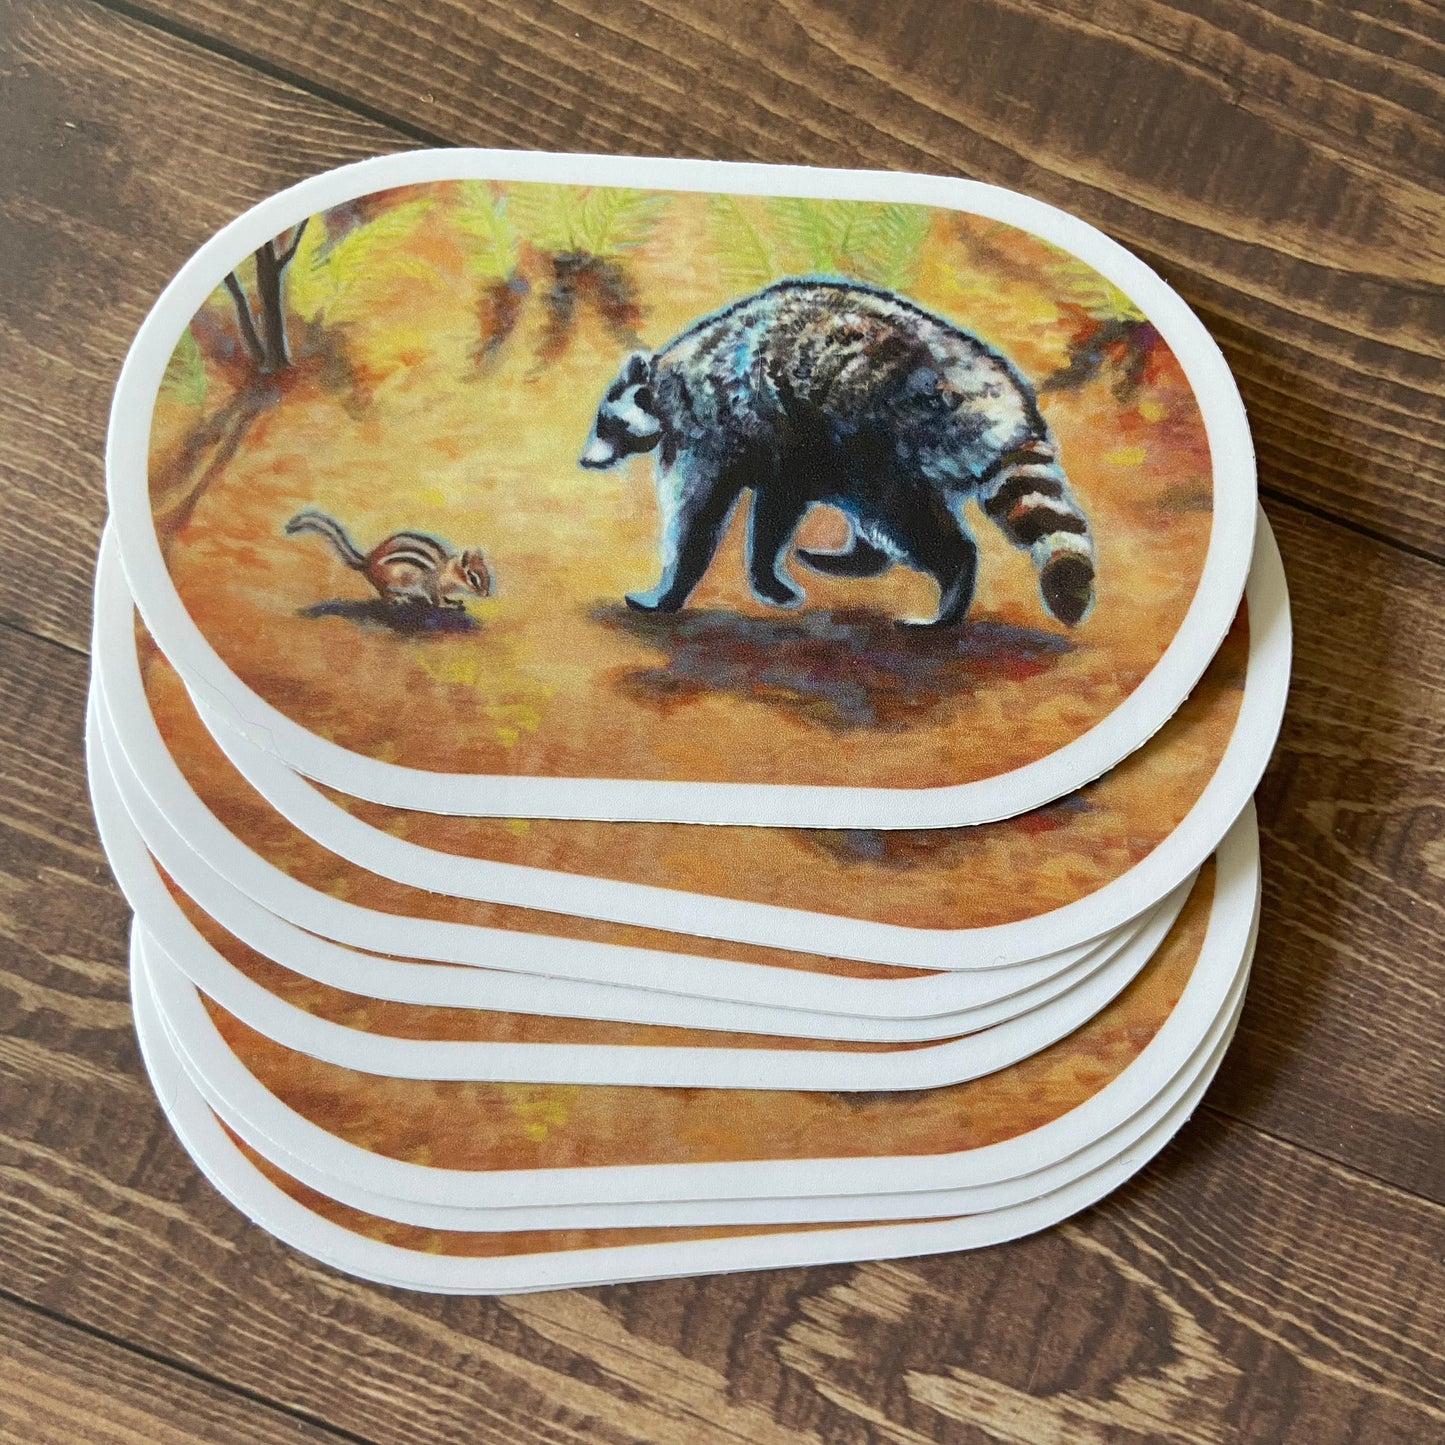 Friends raccoon & chipmunk sticker